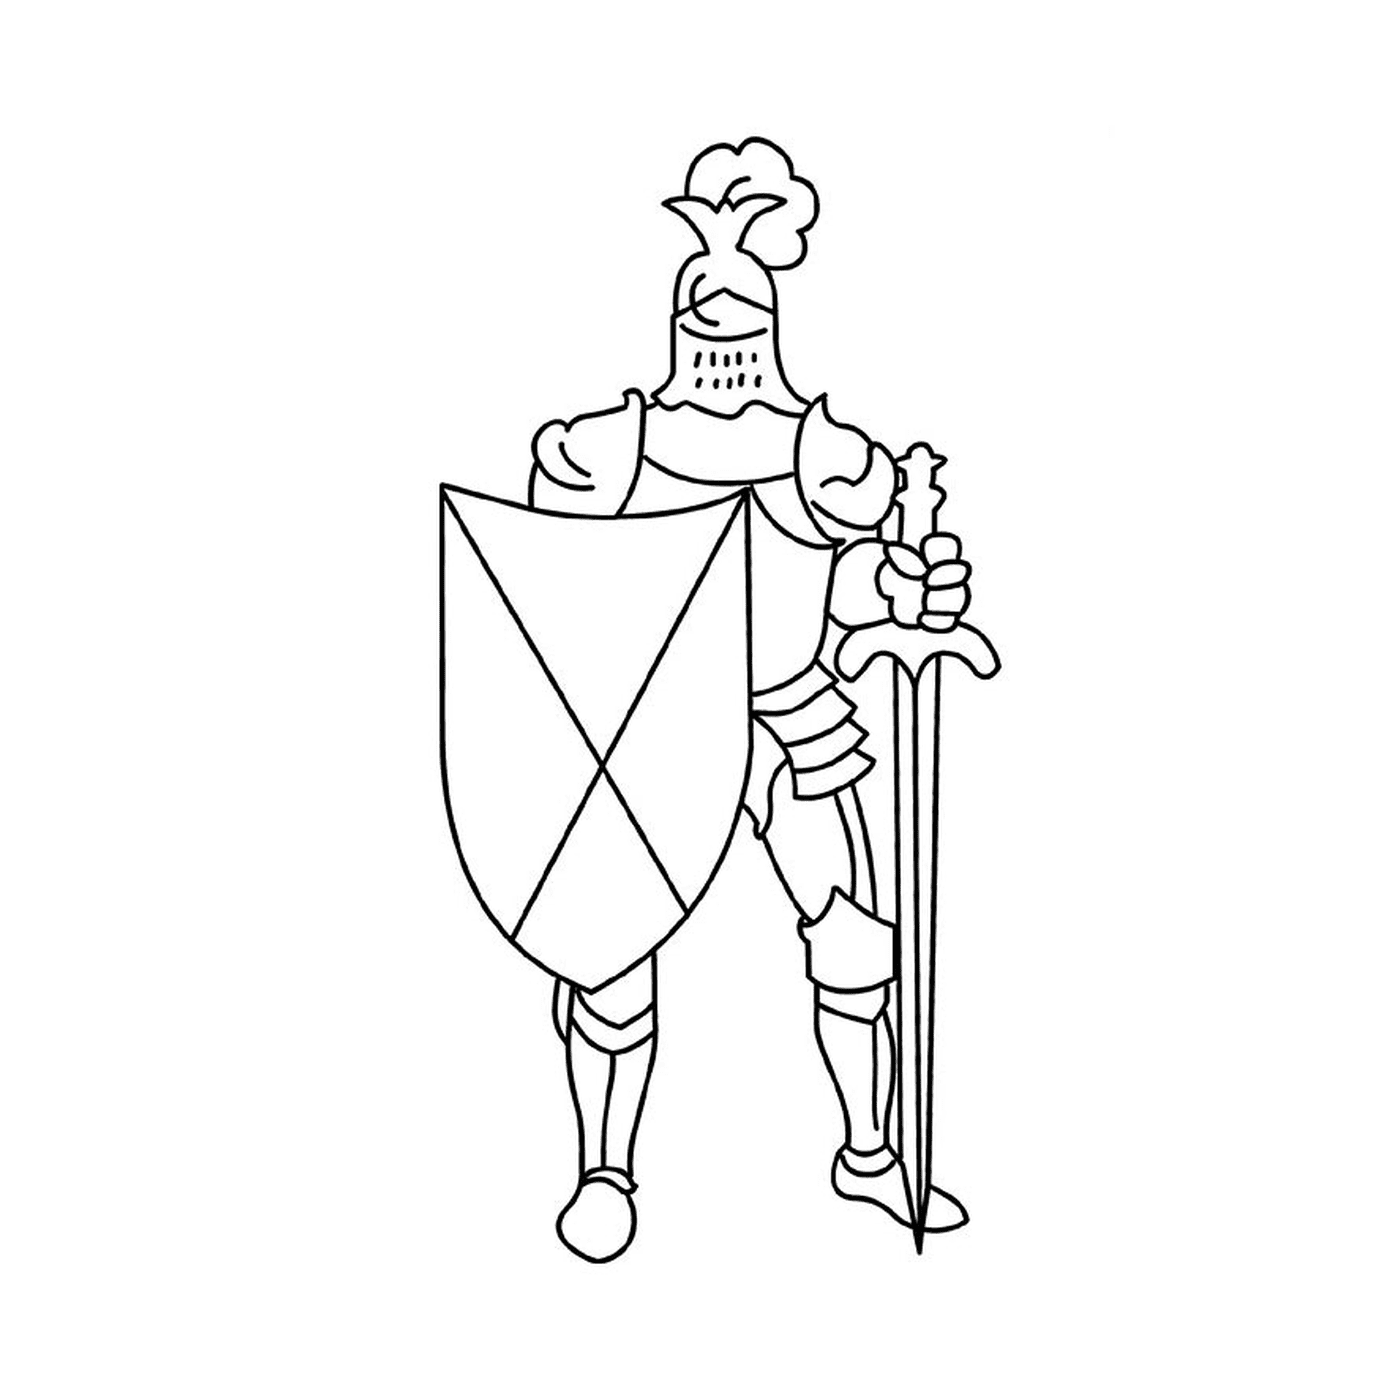  Cavaleiro segurando uma espada e um escudo 